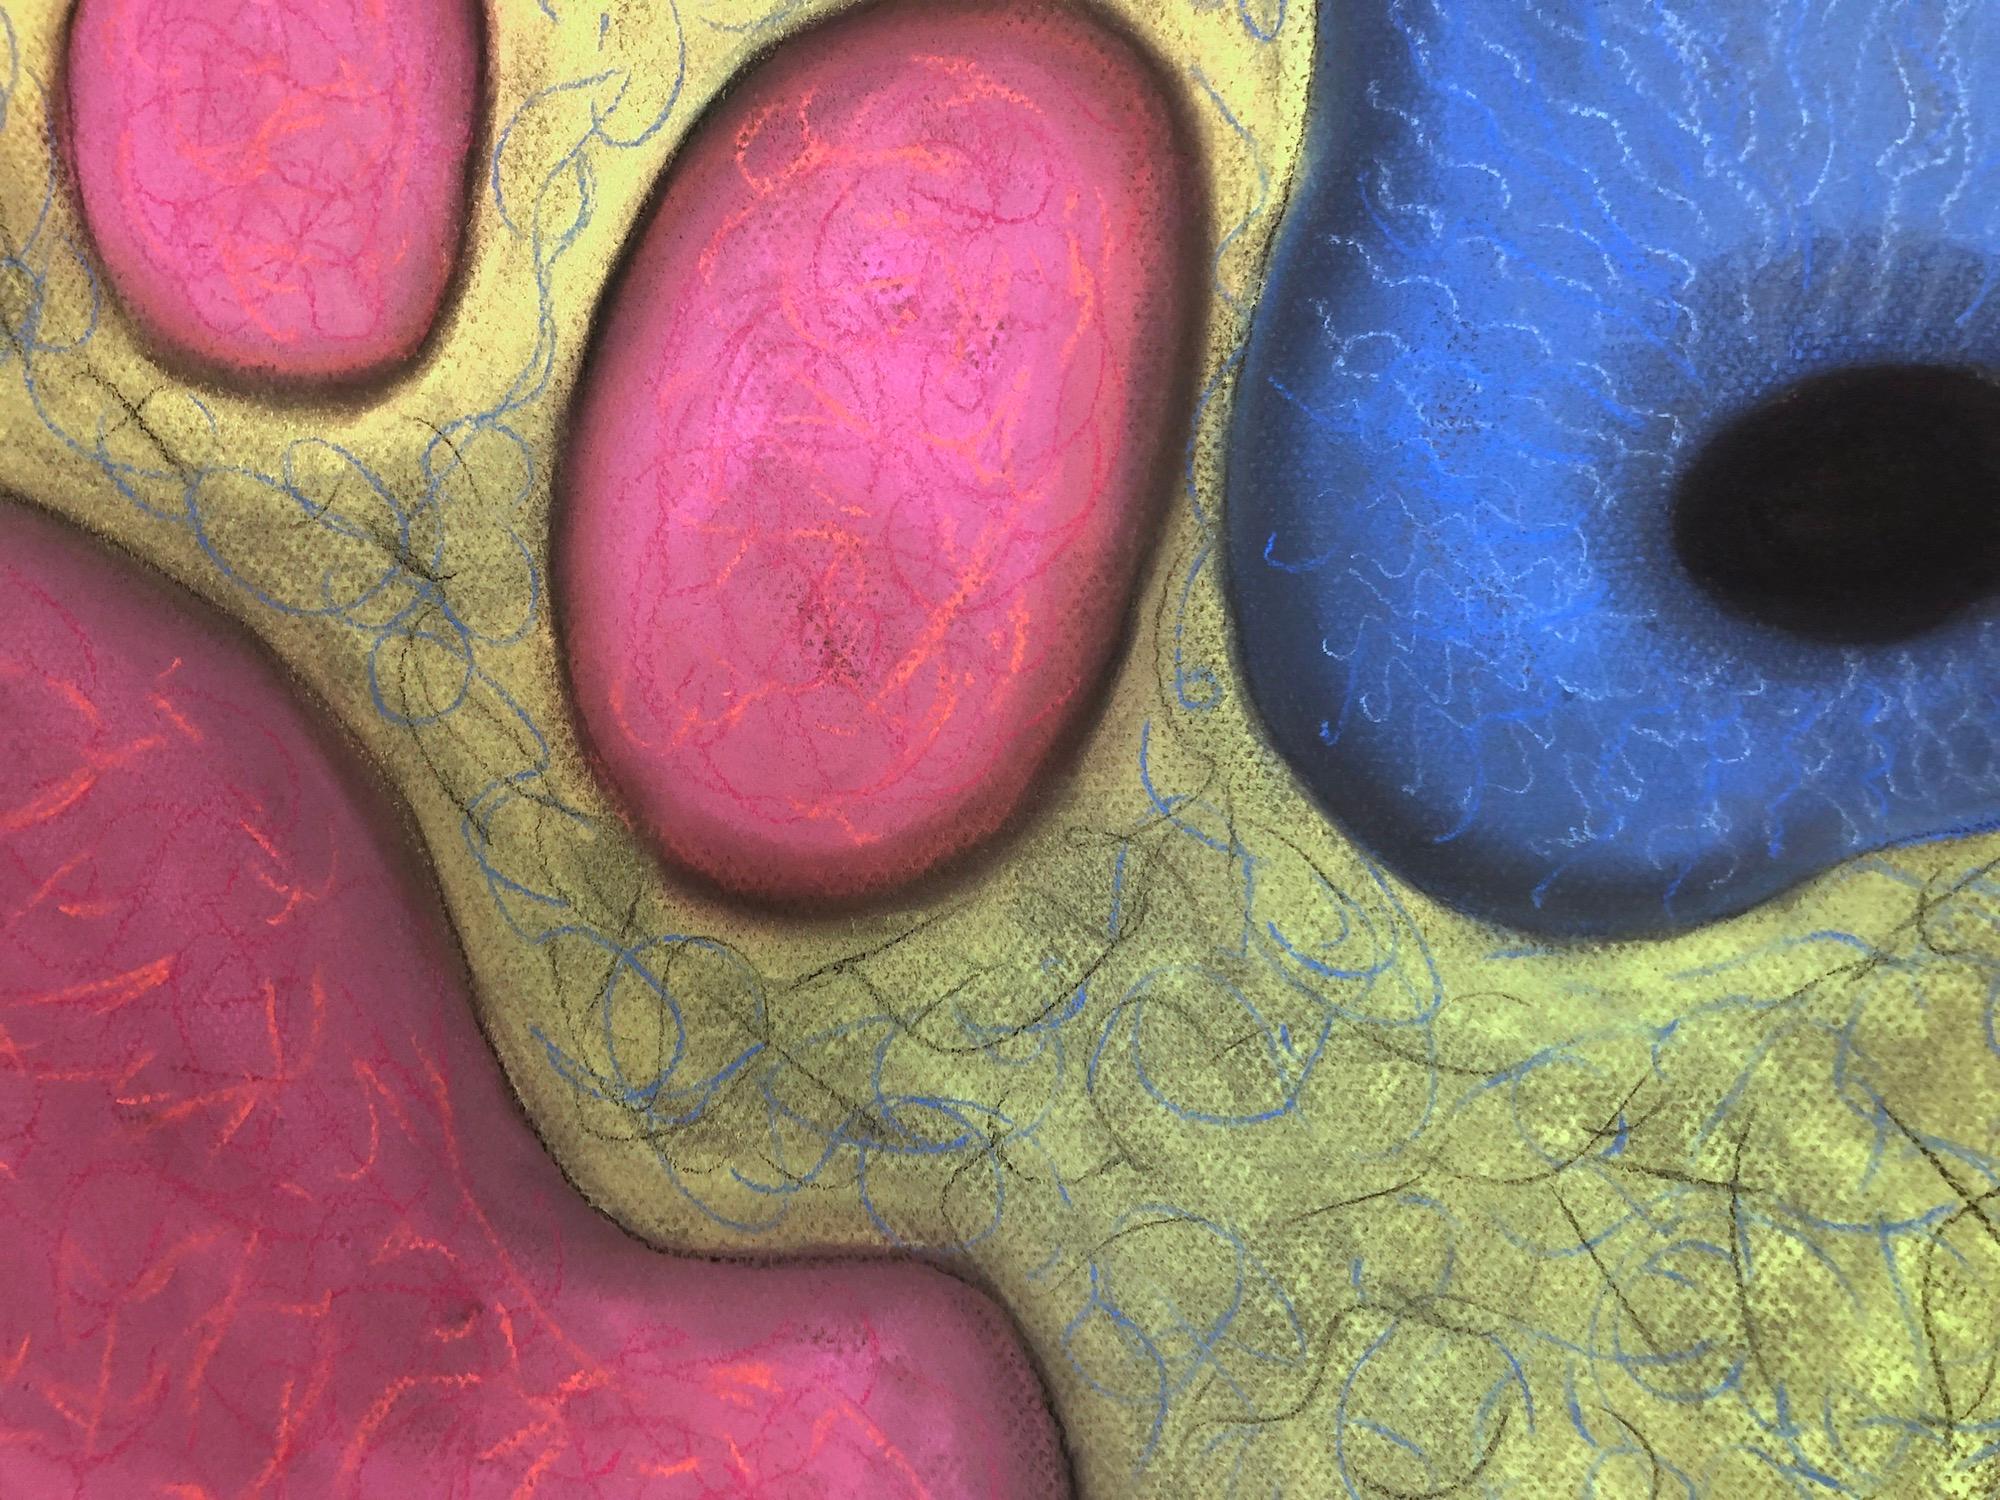 „Macrovision 6““, Pastell, mikroskopisch, Landschaft, Blau, Rosa, Gelb, Grün (Grau), Abstract Painting, von Kay Hartung